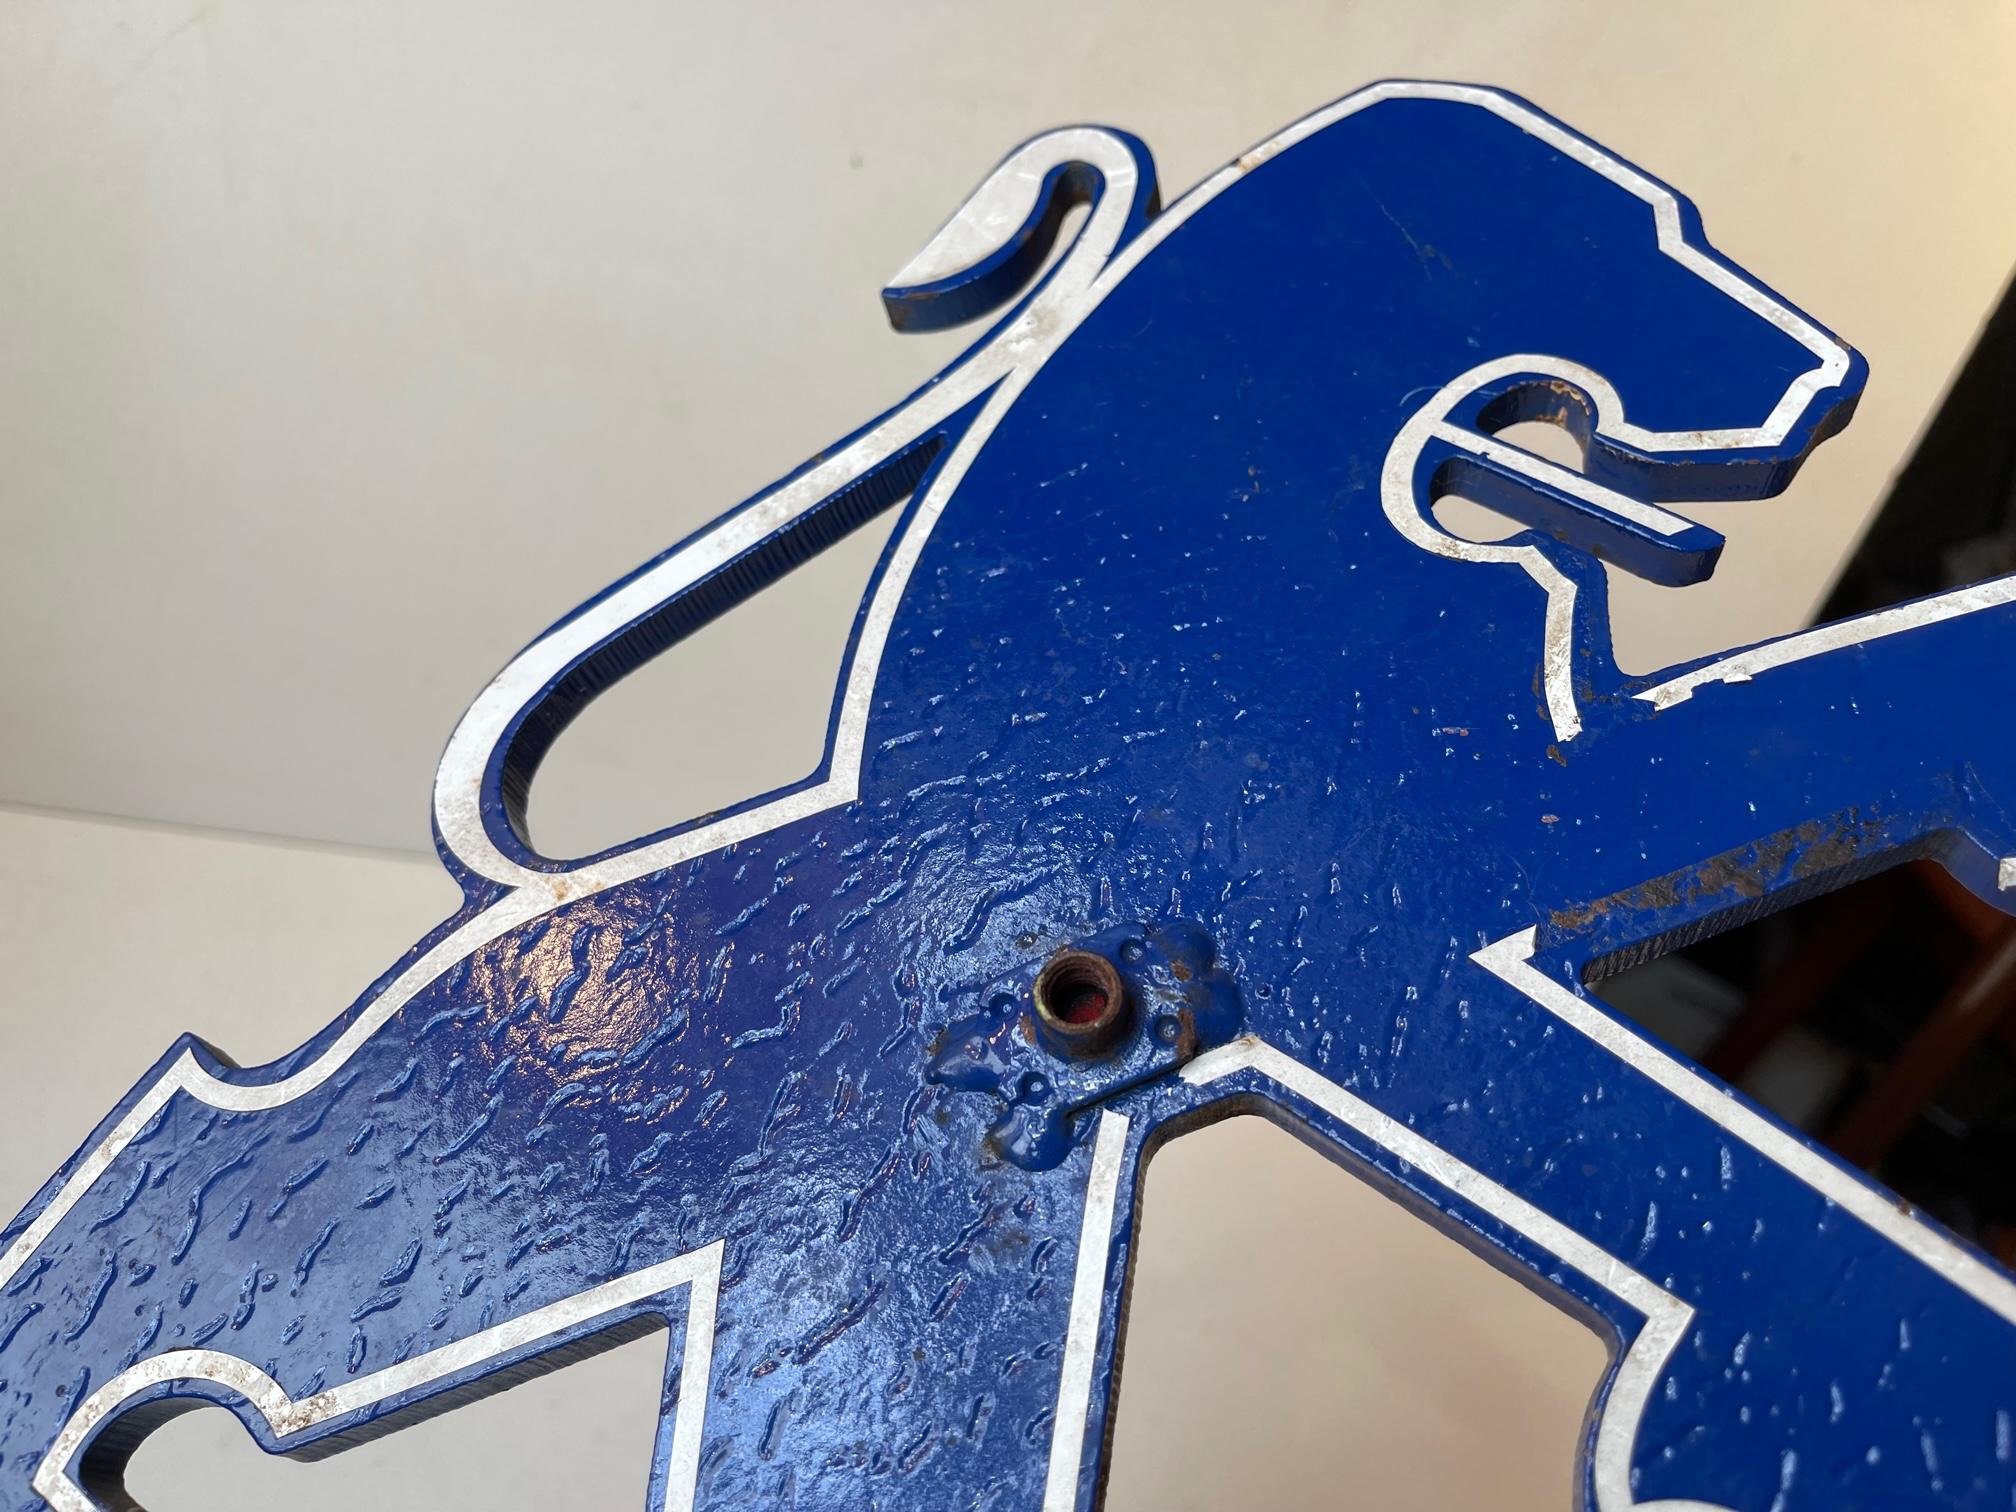 French Blue Lion, Vintage Enamel Sign from Peugeot France